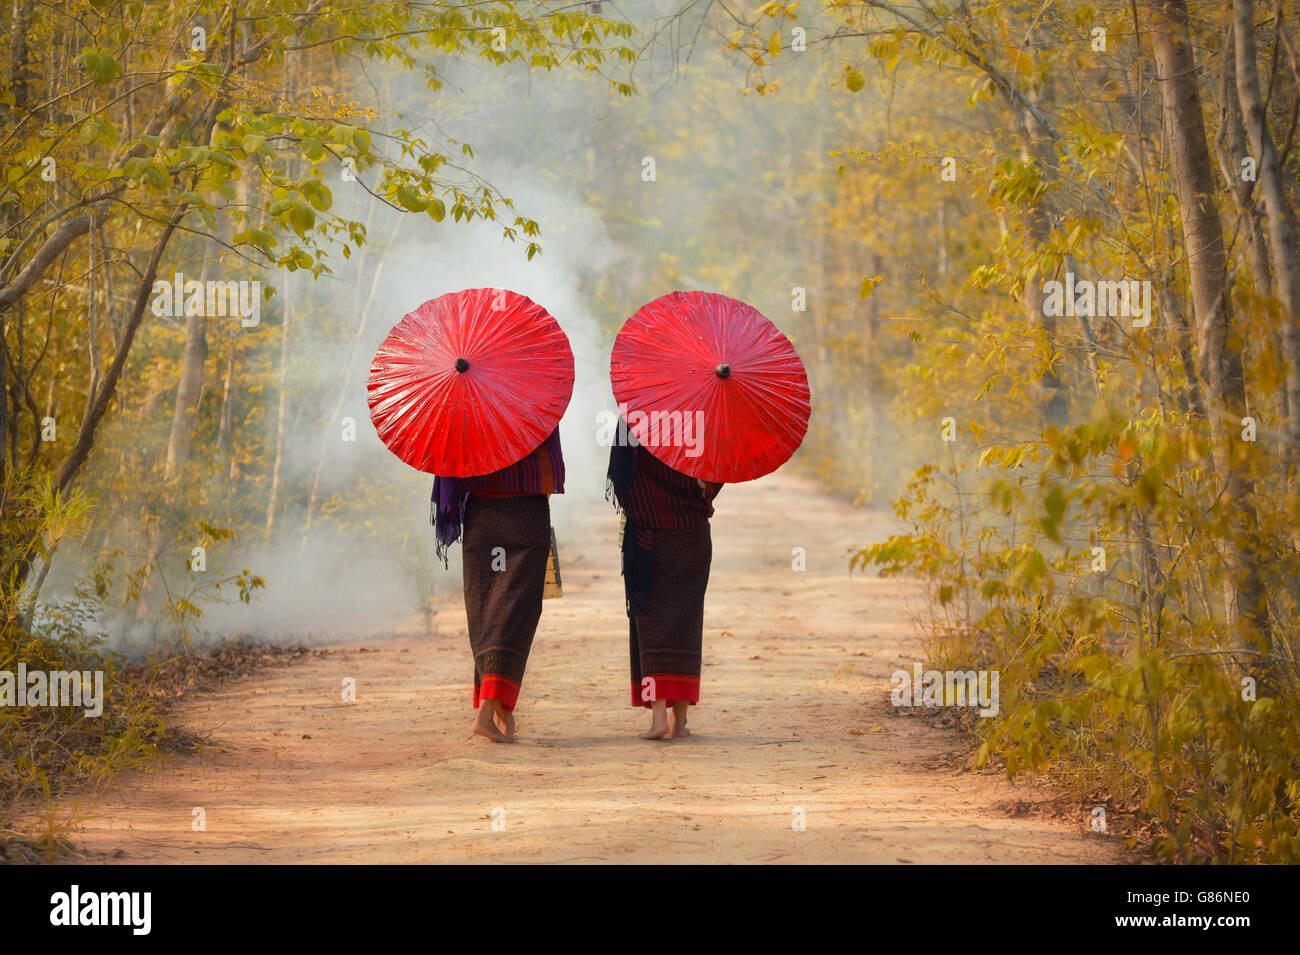 Vue arrière de deux femmes marchant à travers la forêt, Thaïlande Banque D'Images